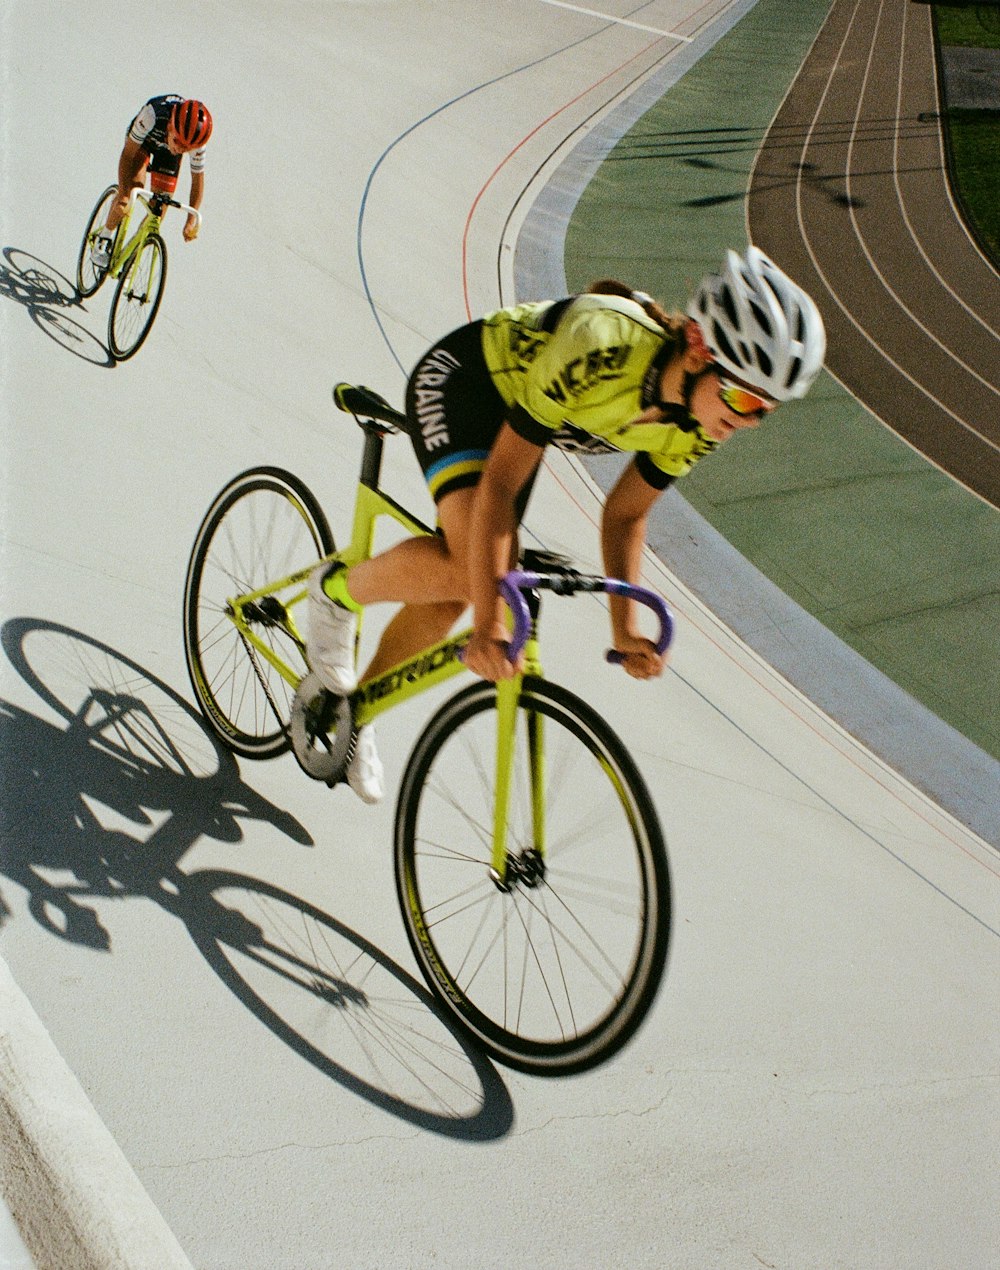 Mann im grün-weißen Fahrradanzug beim Fahrradfahren